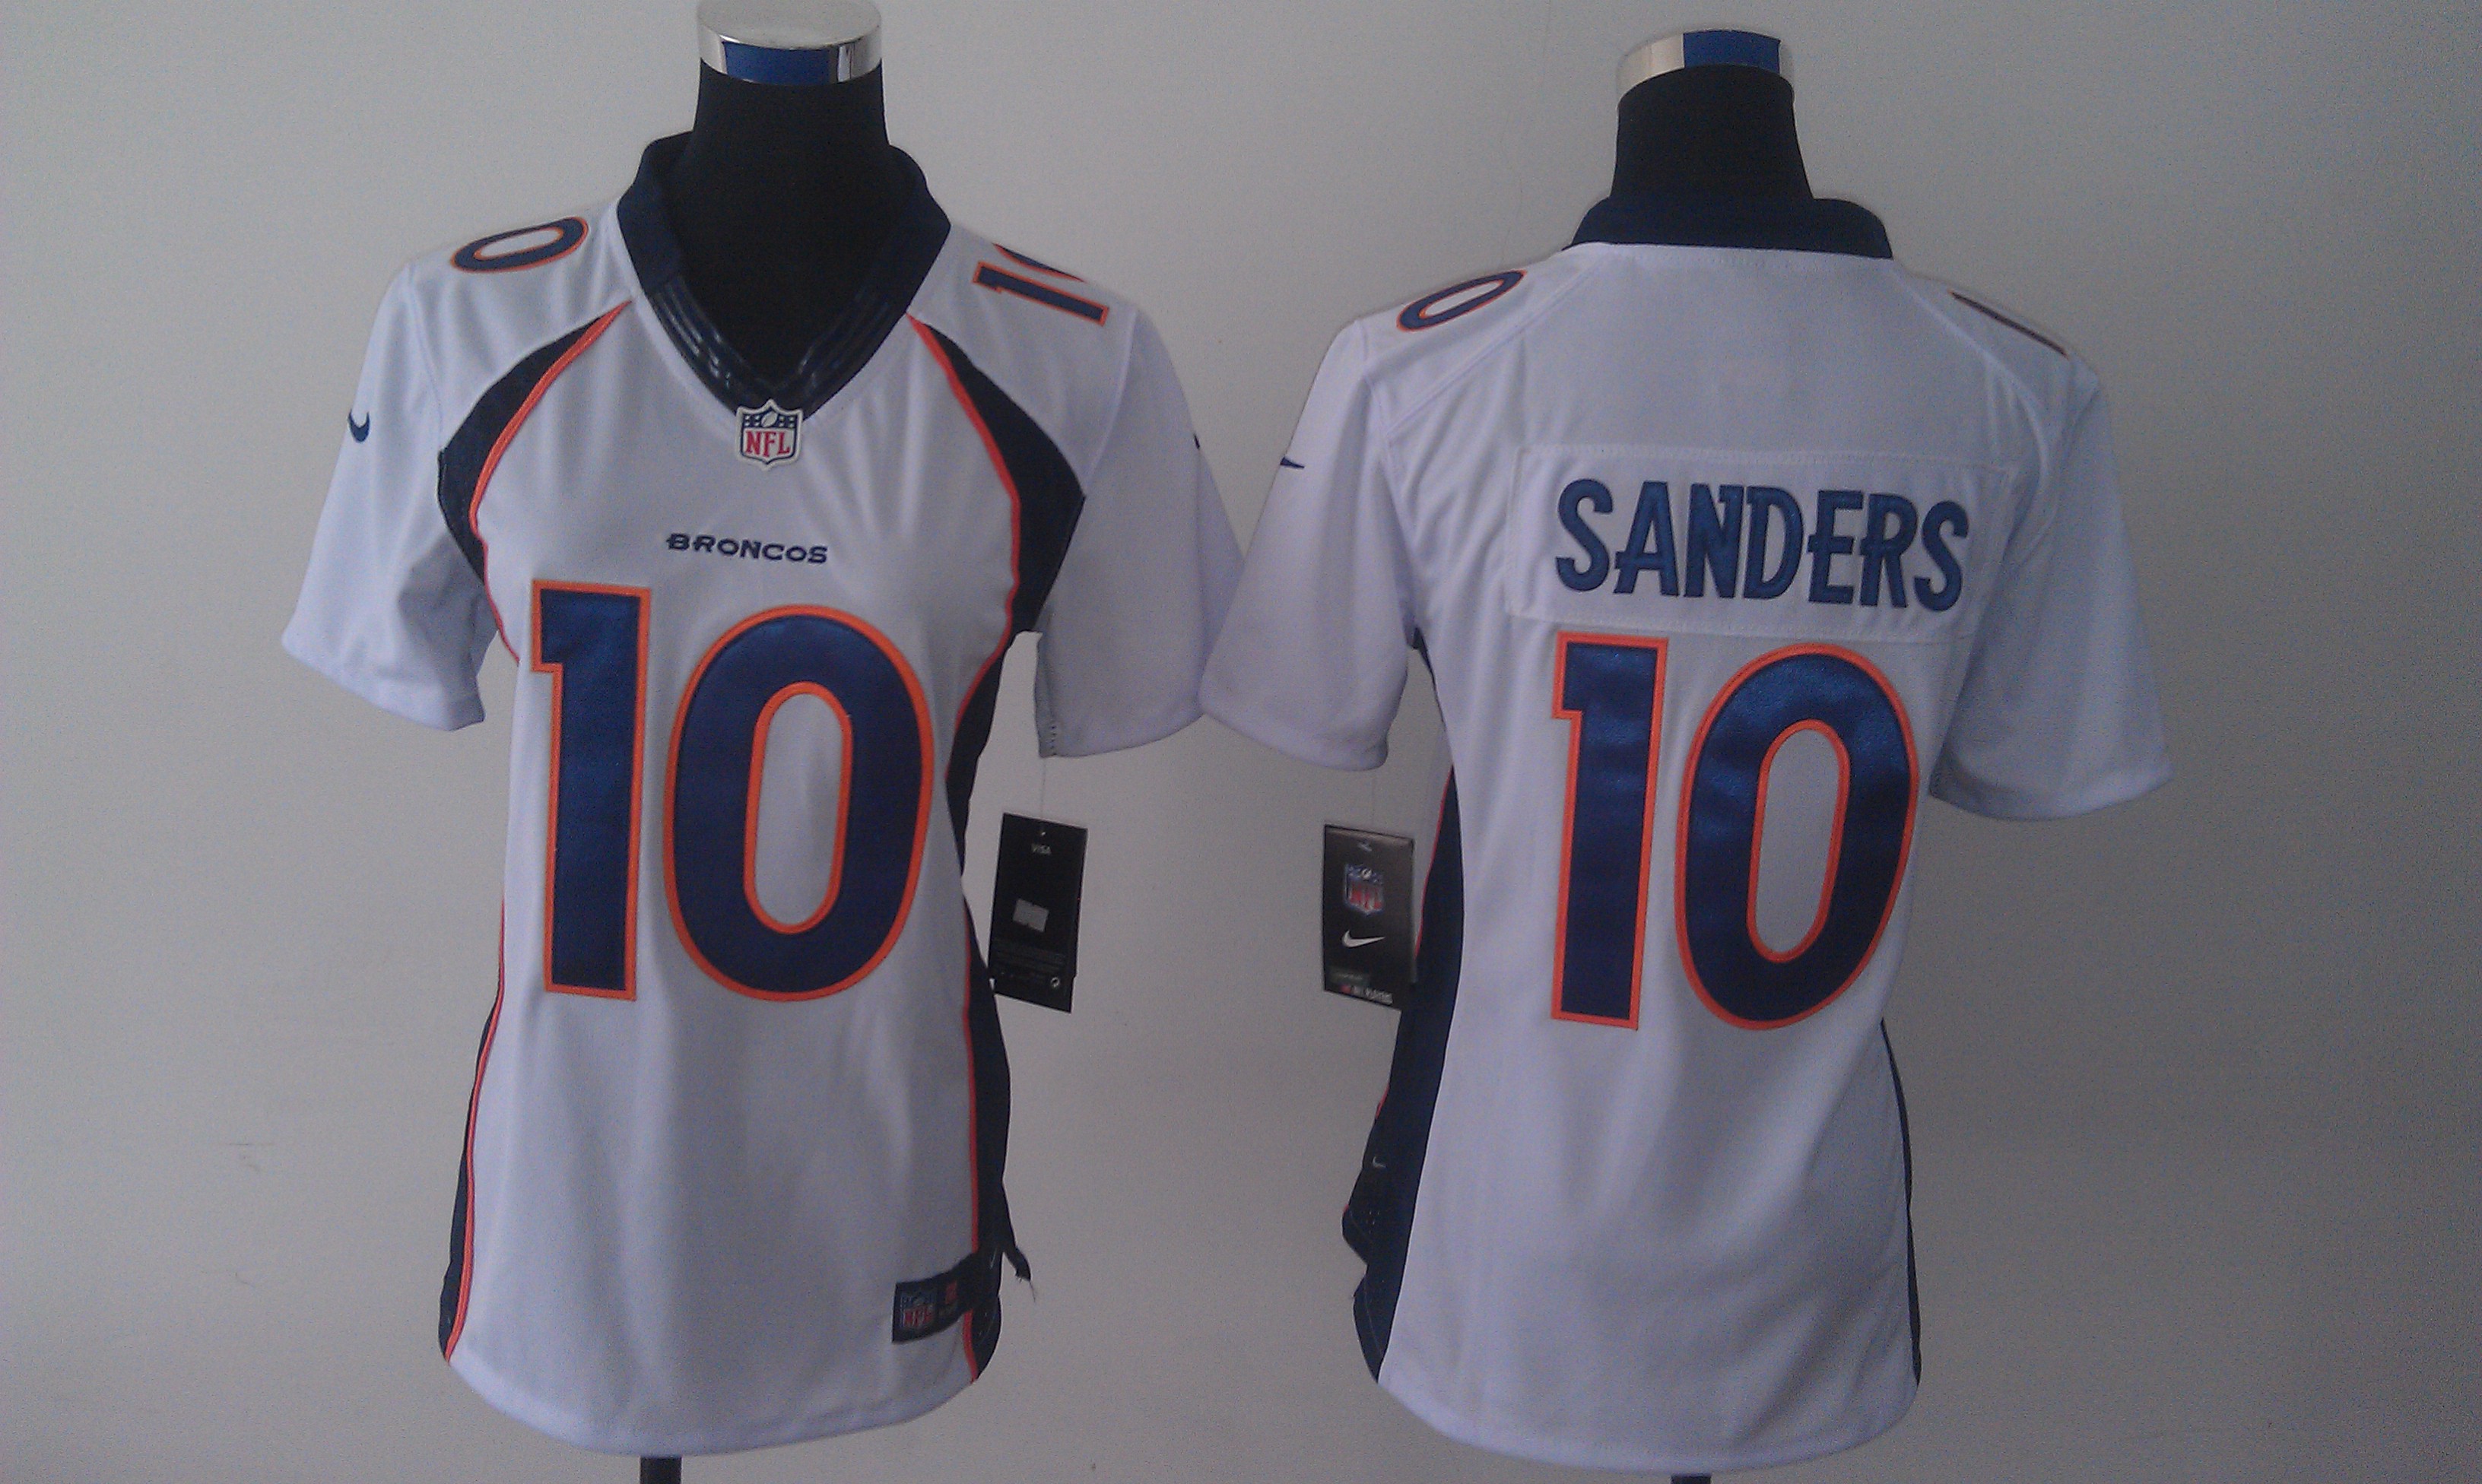 Nike Broncos 10 Sanders White Women Limited Jerseys